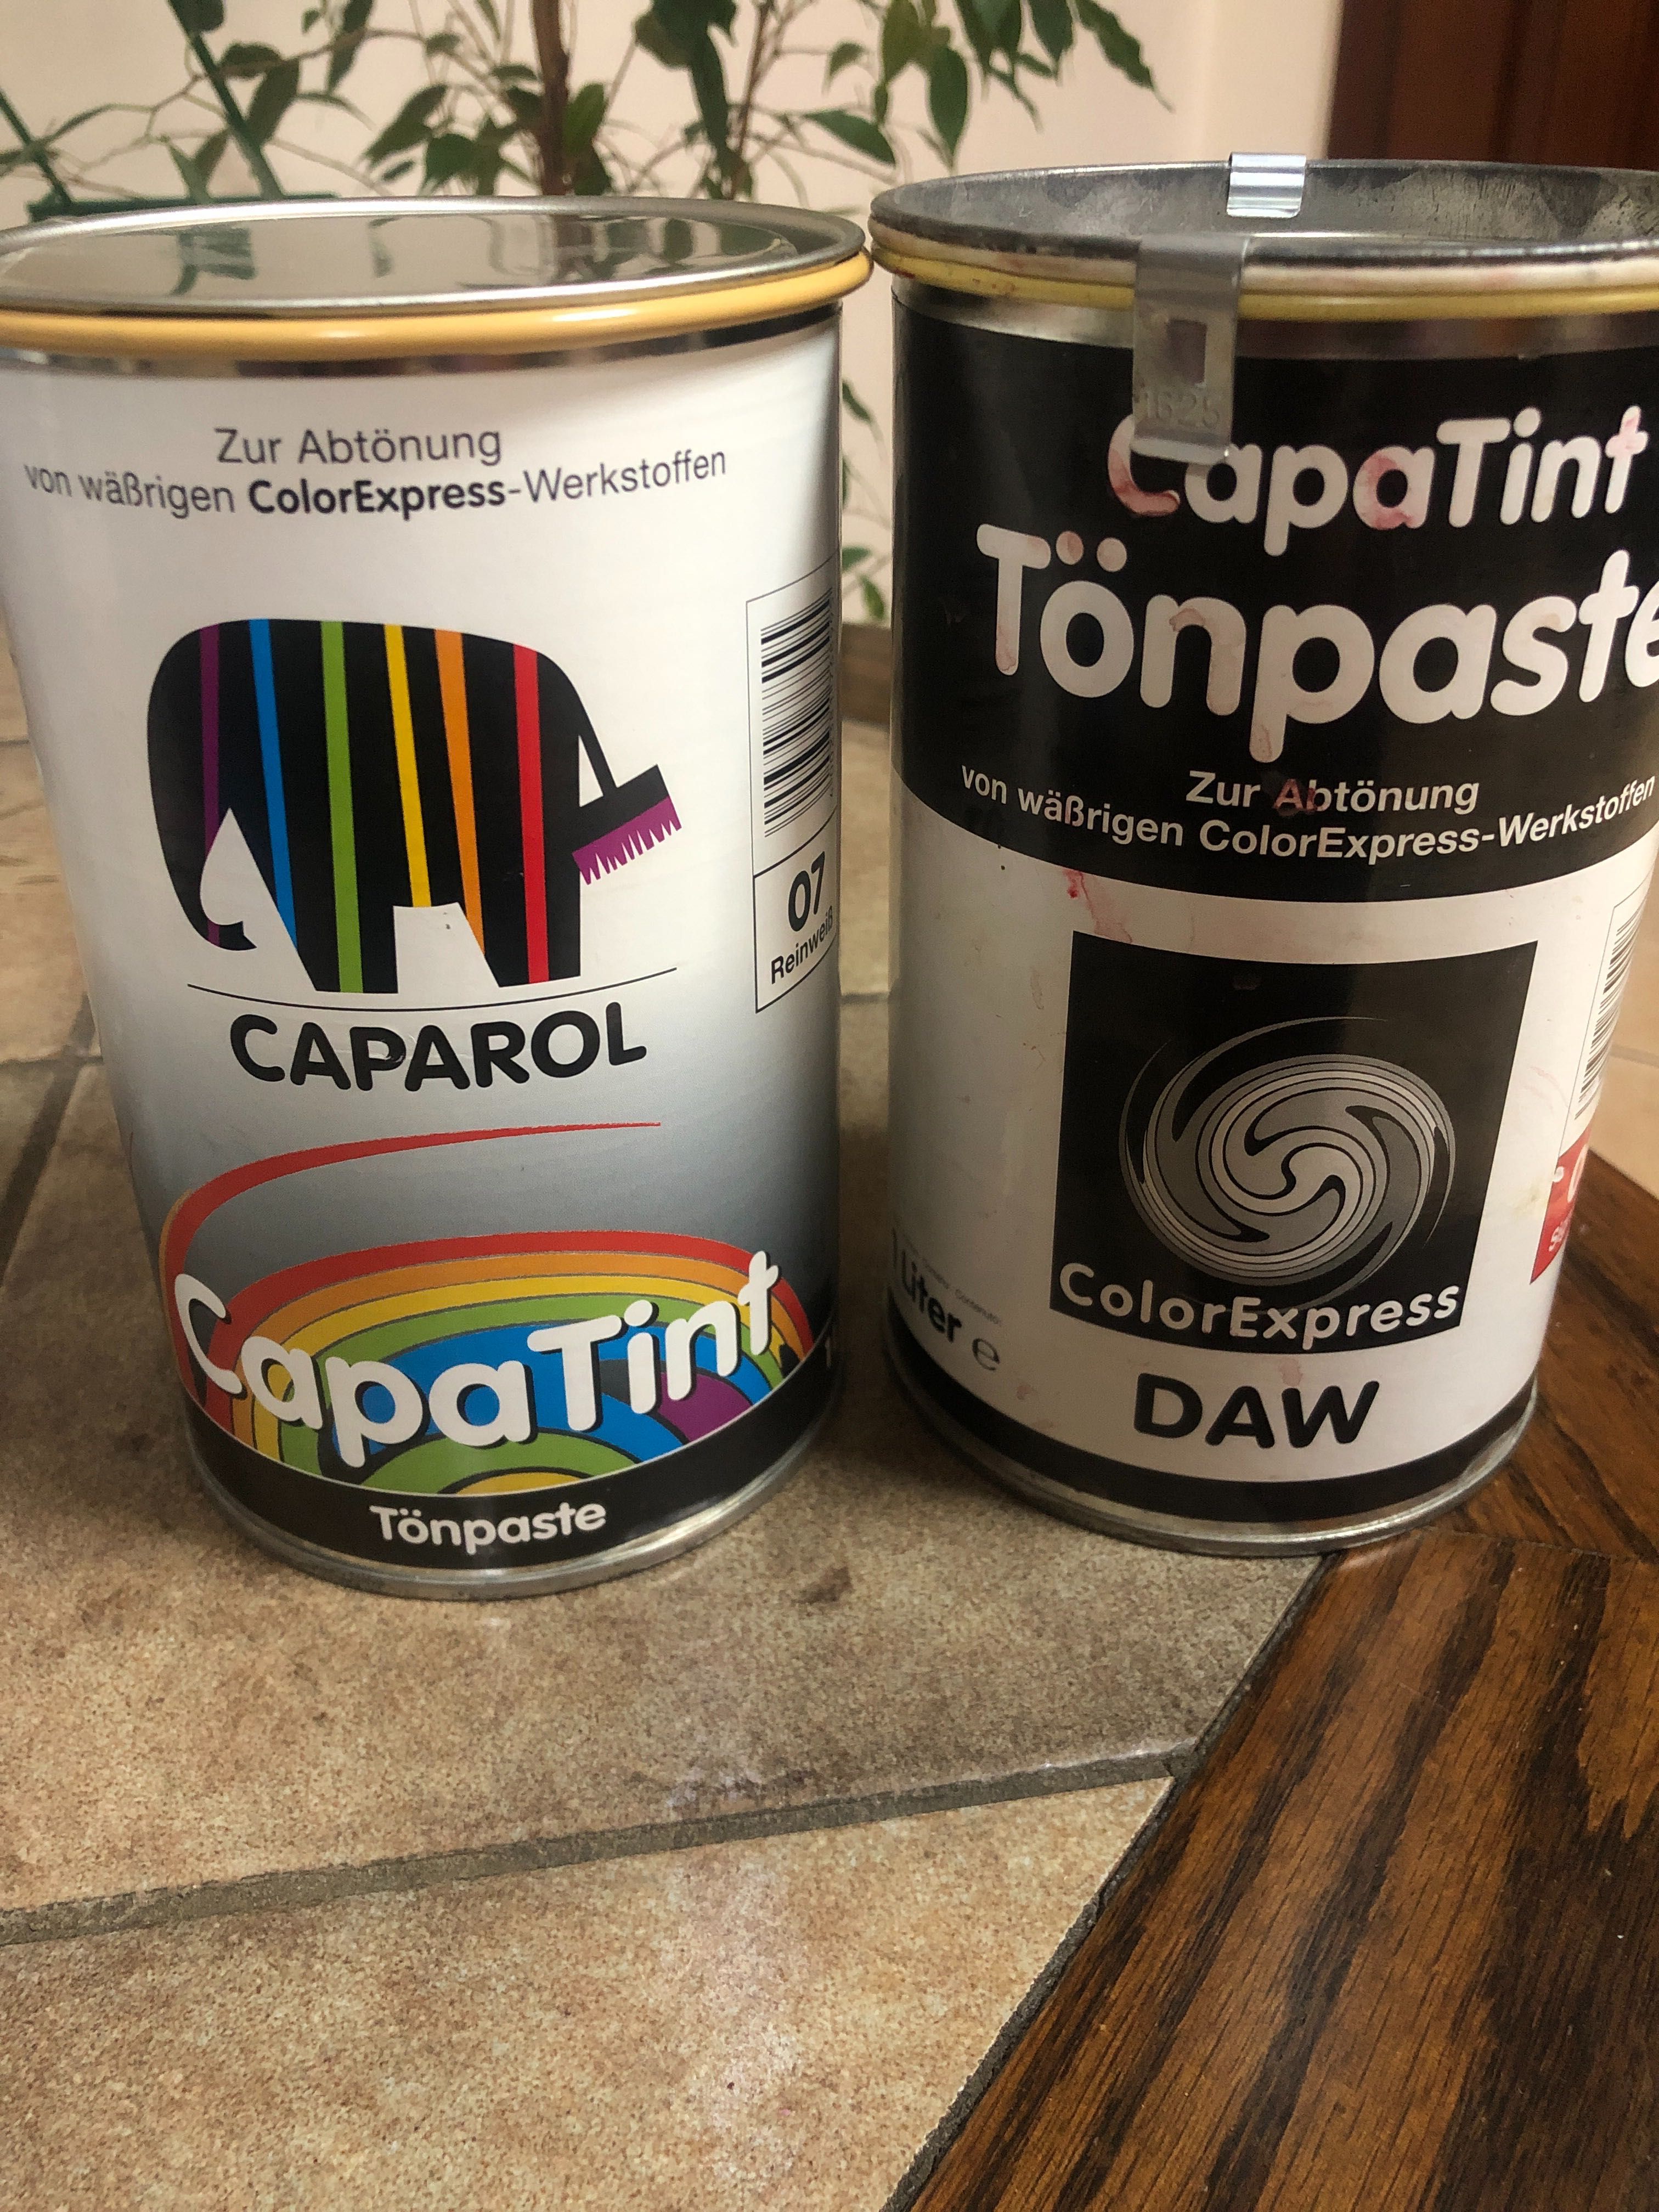 тон- паста CapaTint Toenpaste фірми CAPAROL